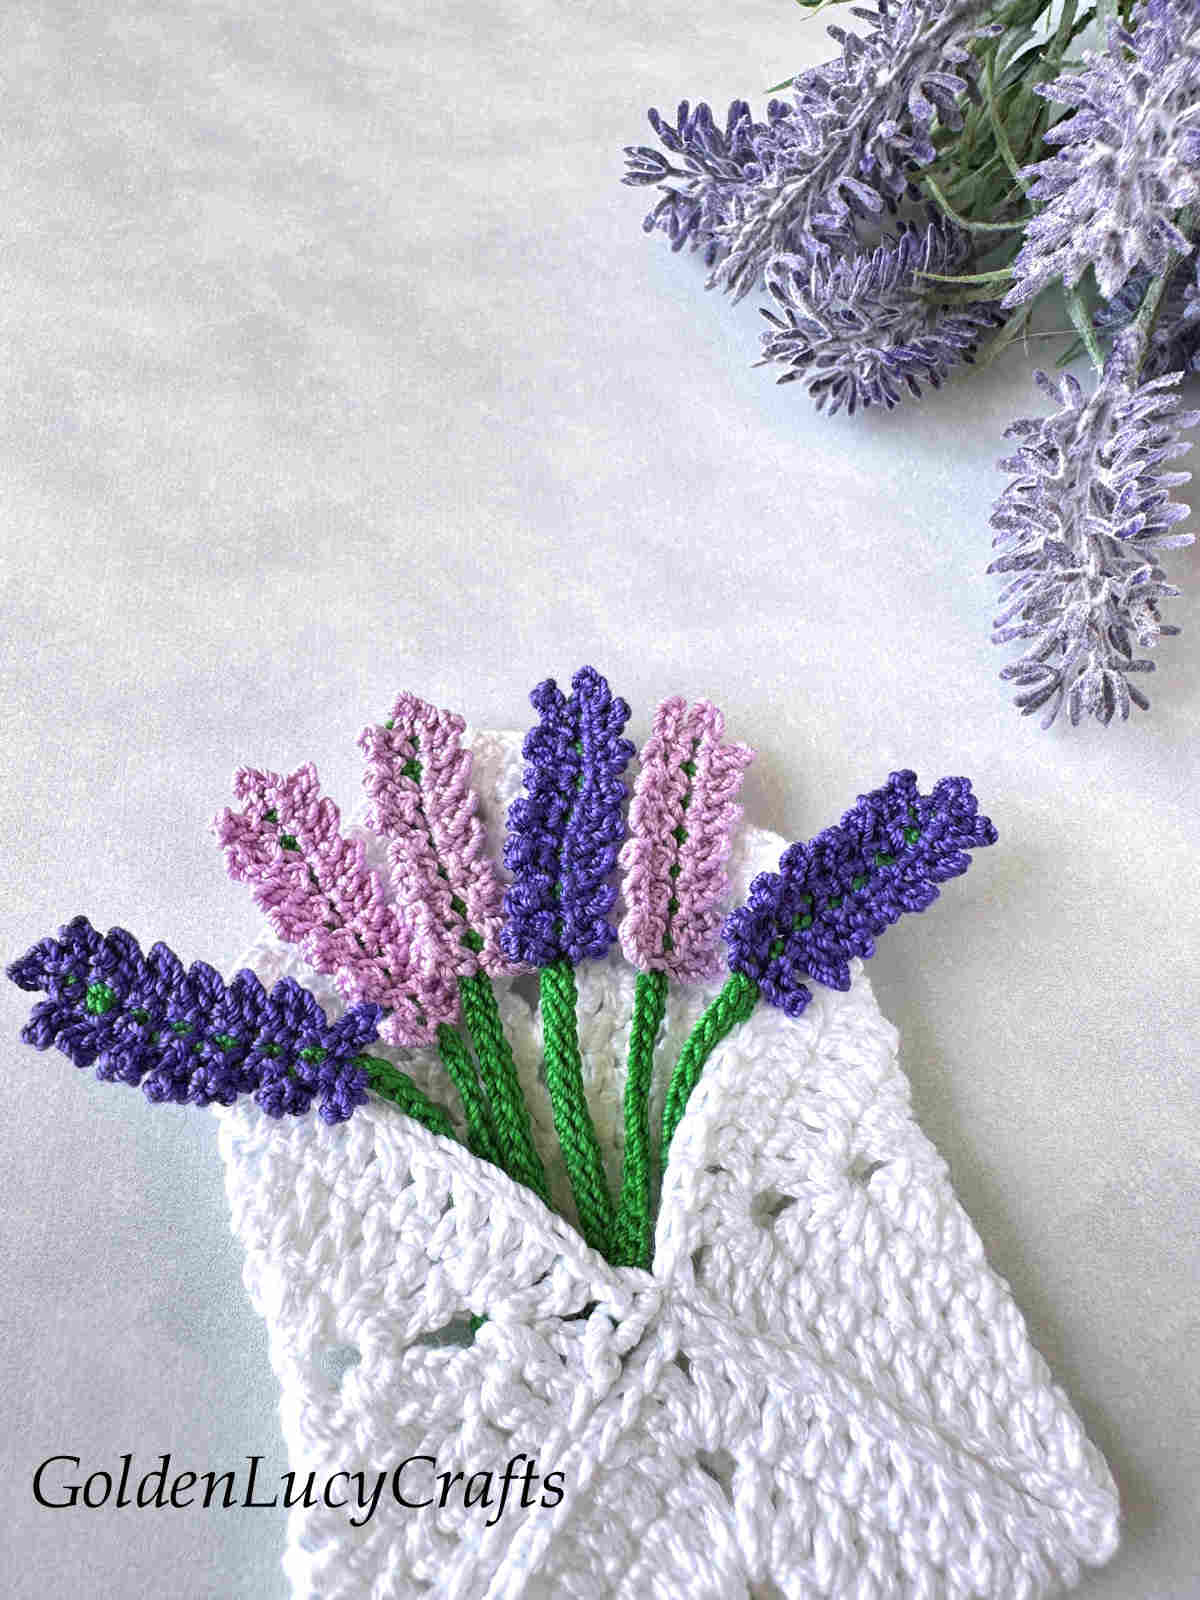 Crochet lavender envelope close up picture.